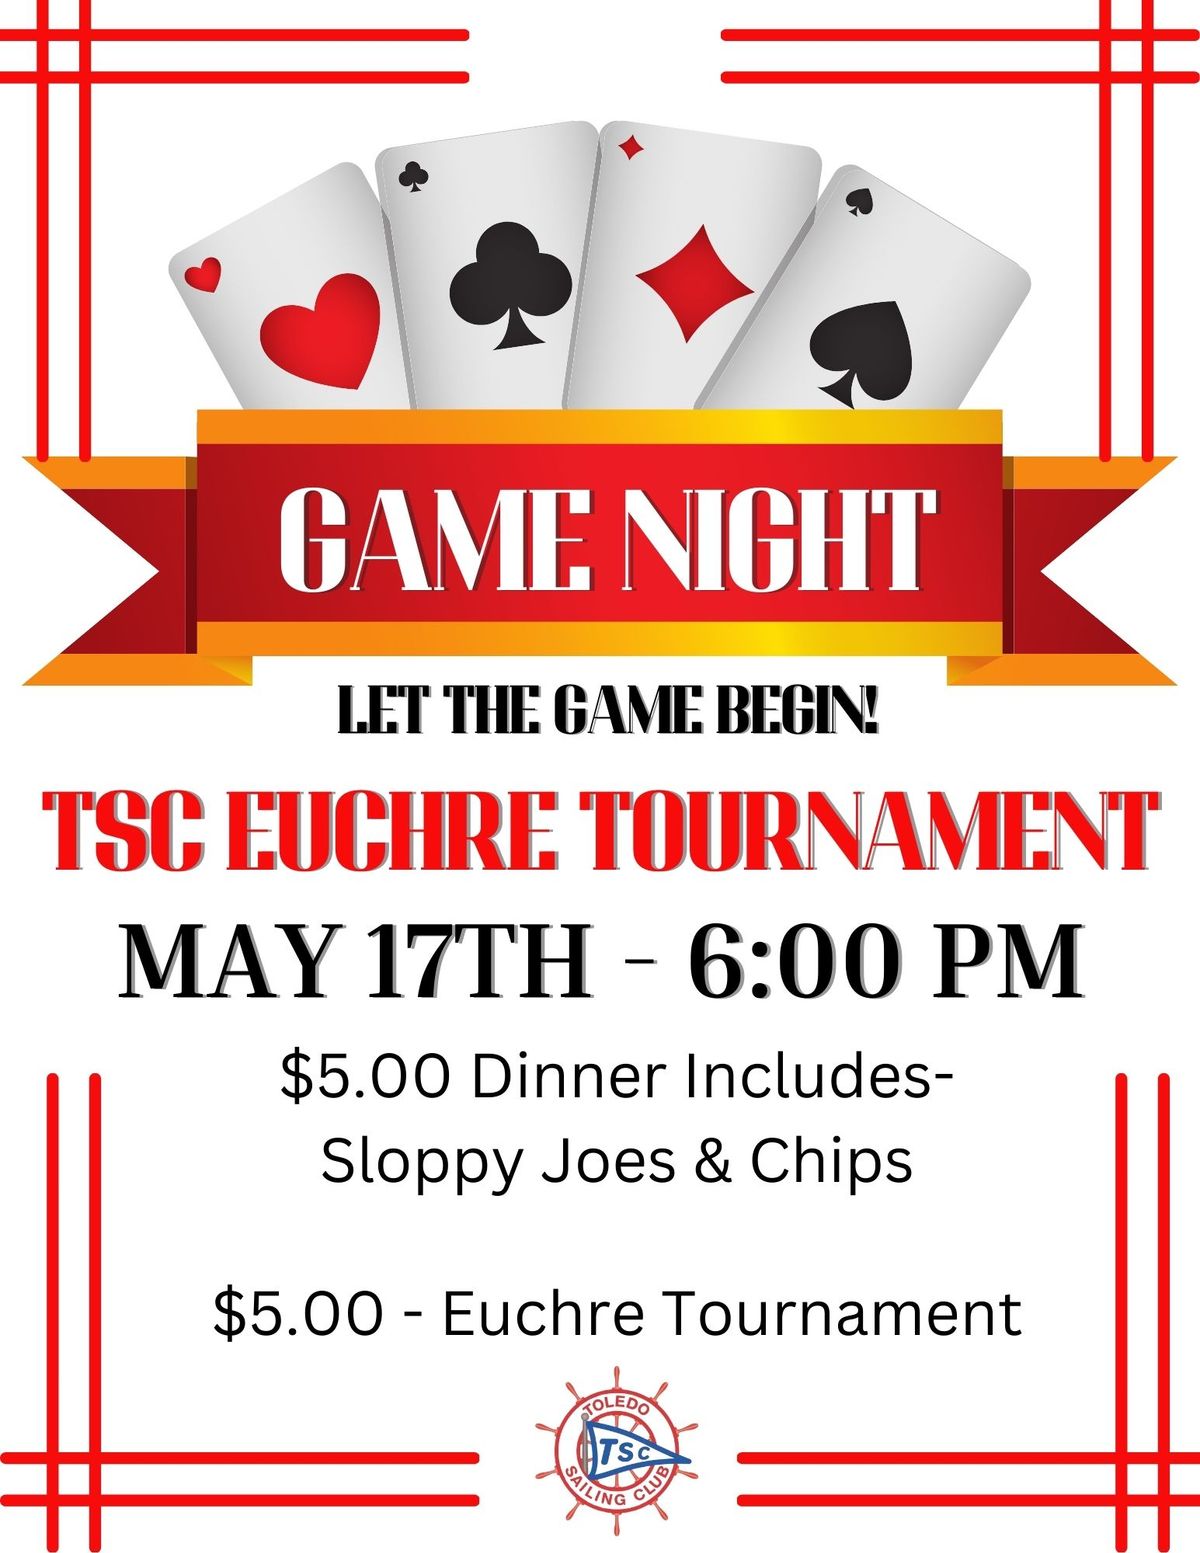 TSC Euchre Tournament - Not open to Public